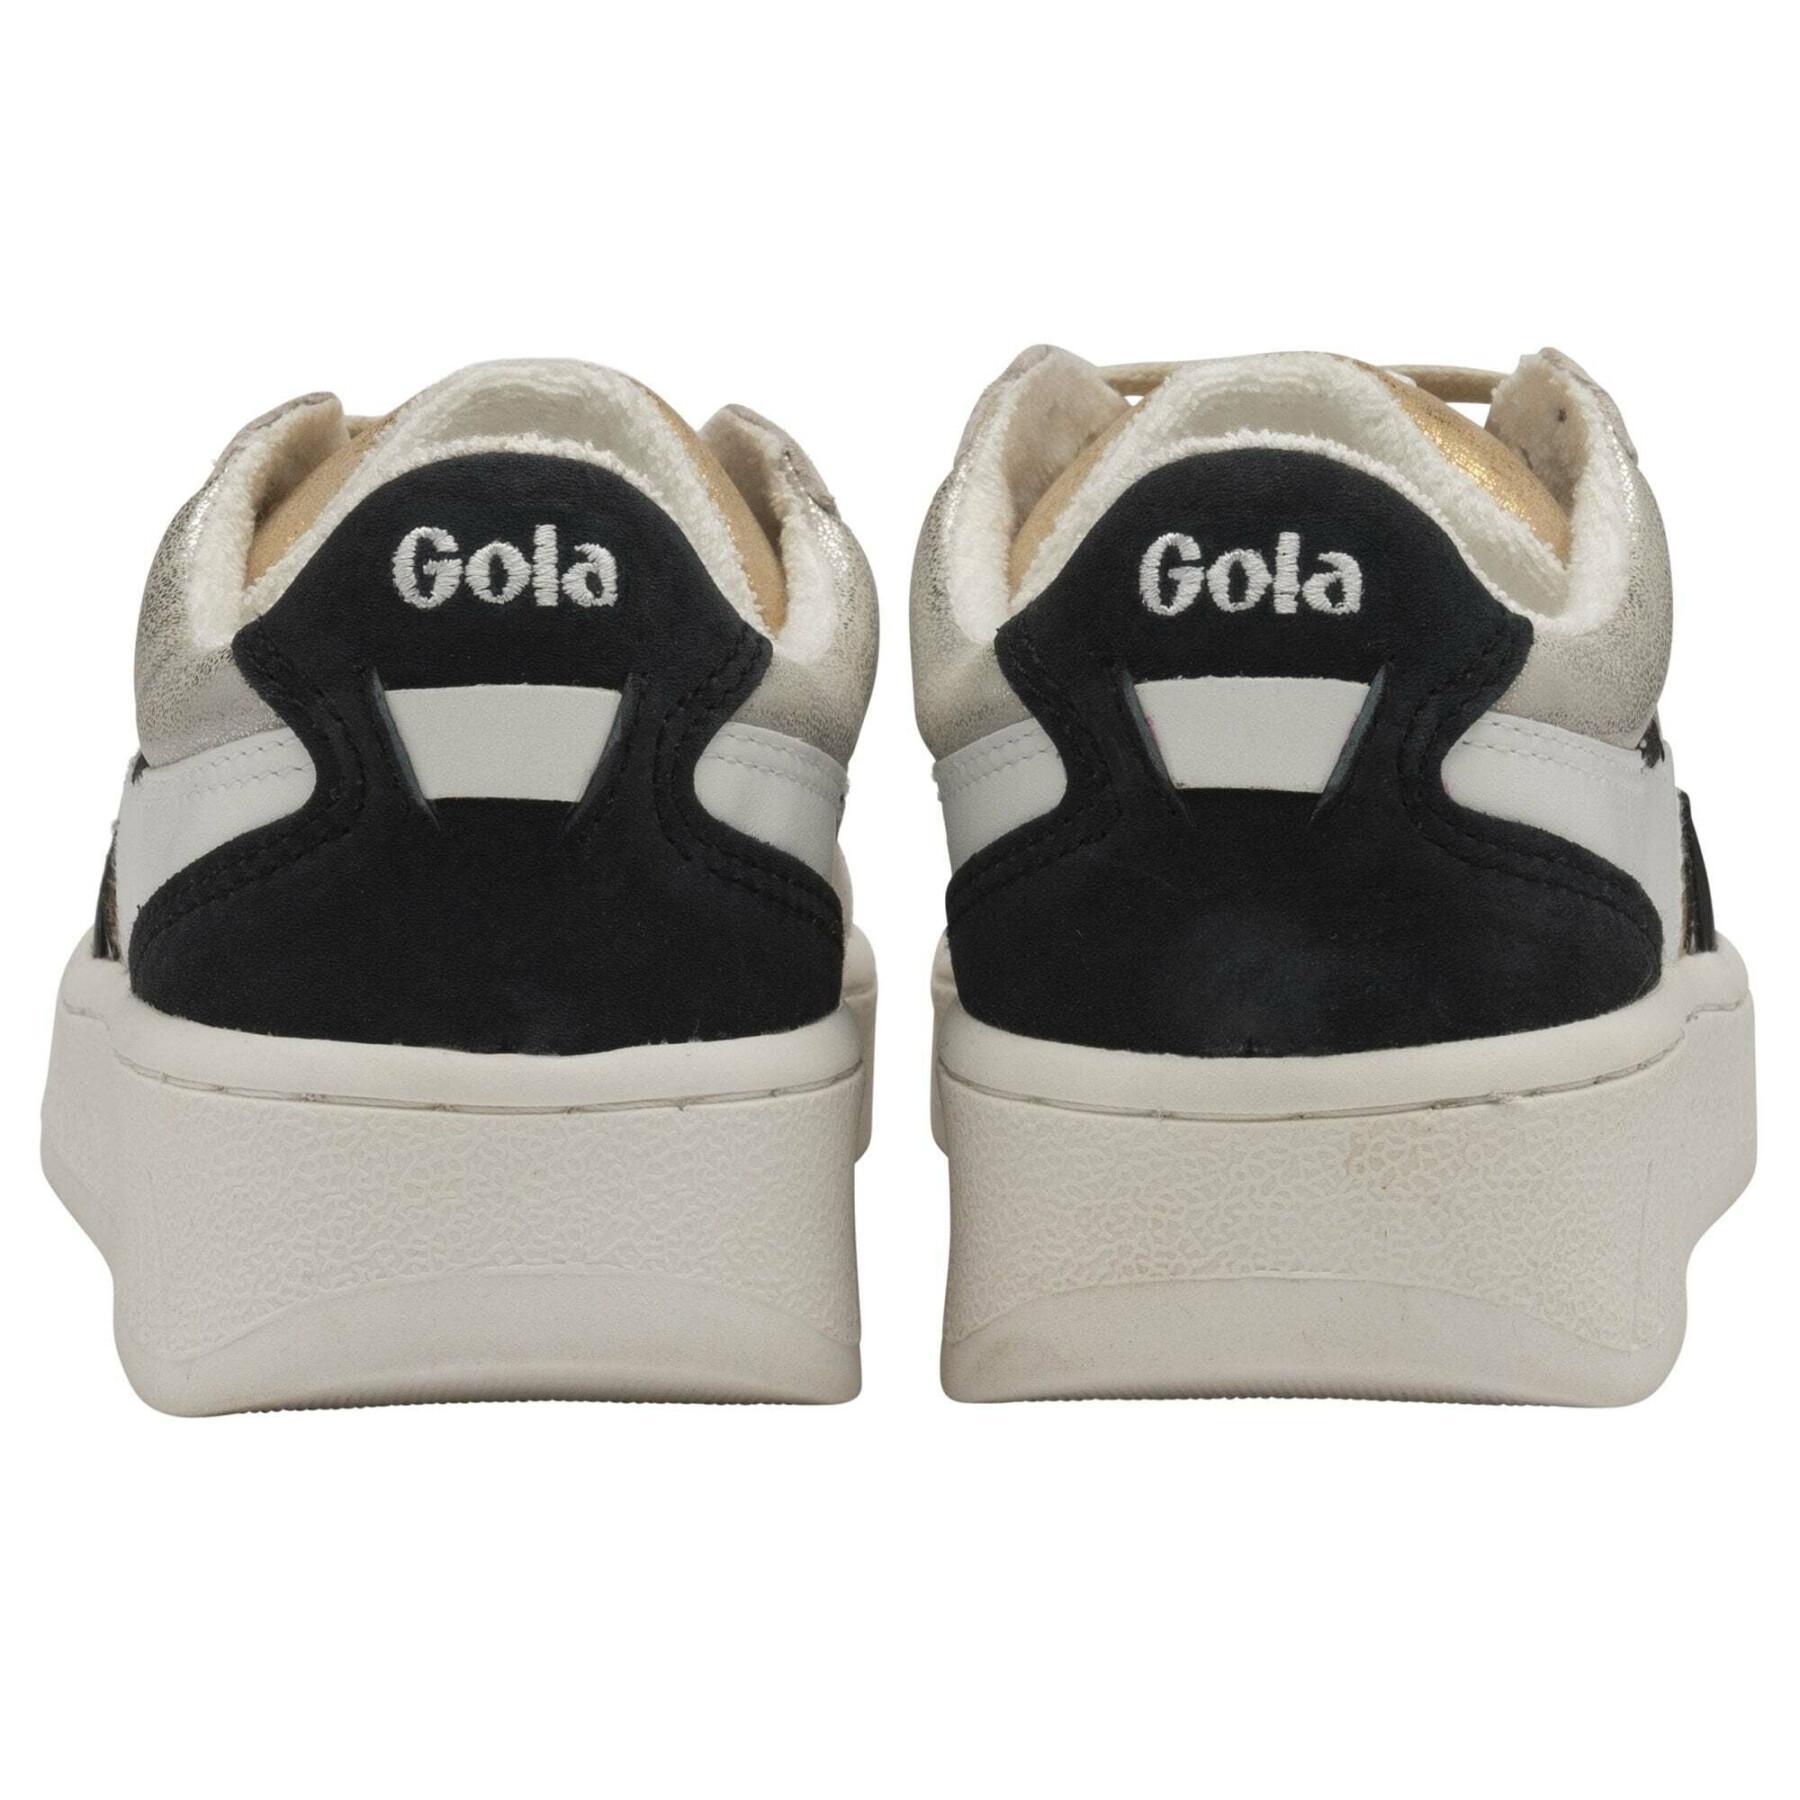 Women's sneakers Gola Grandslam Mode